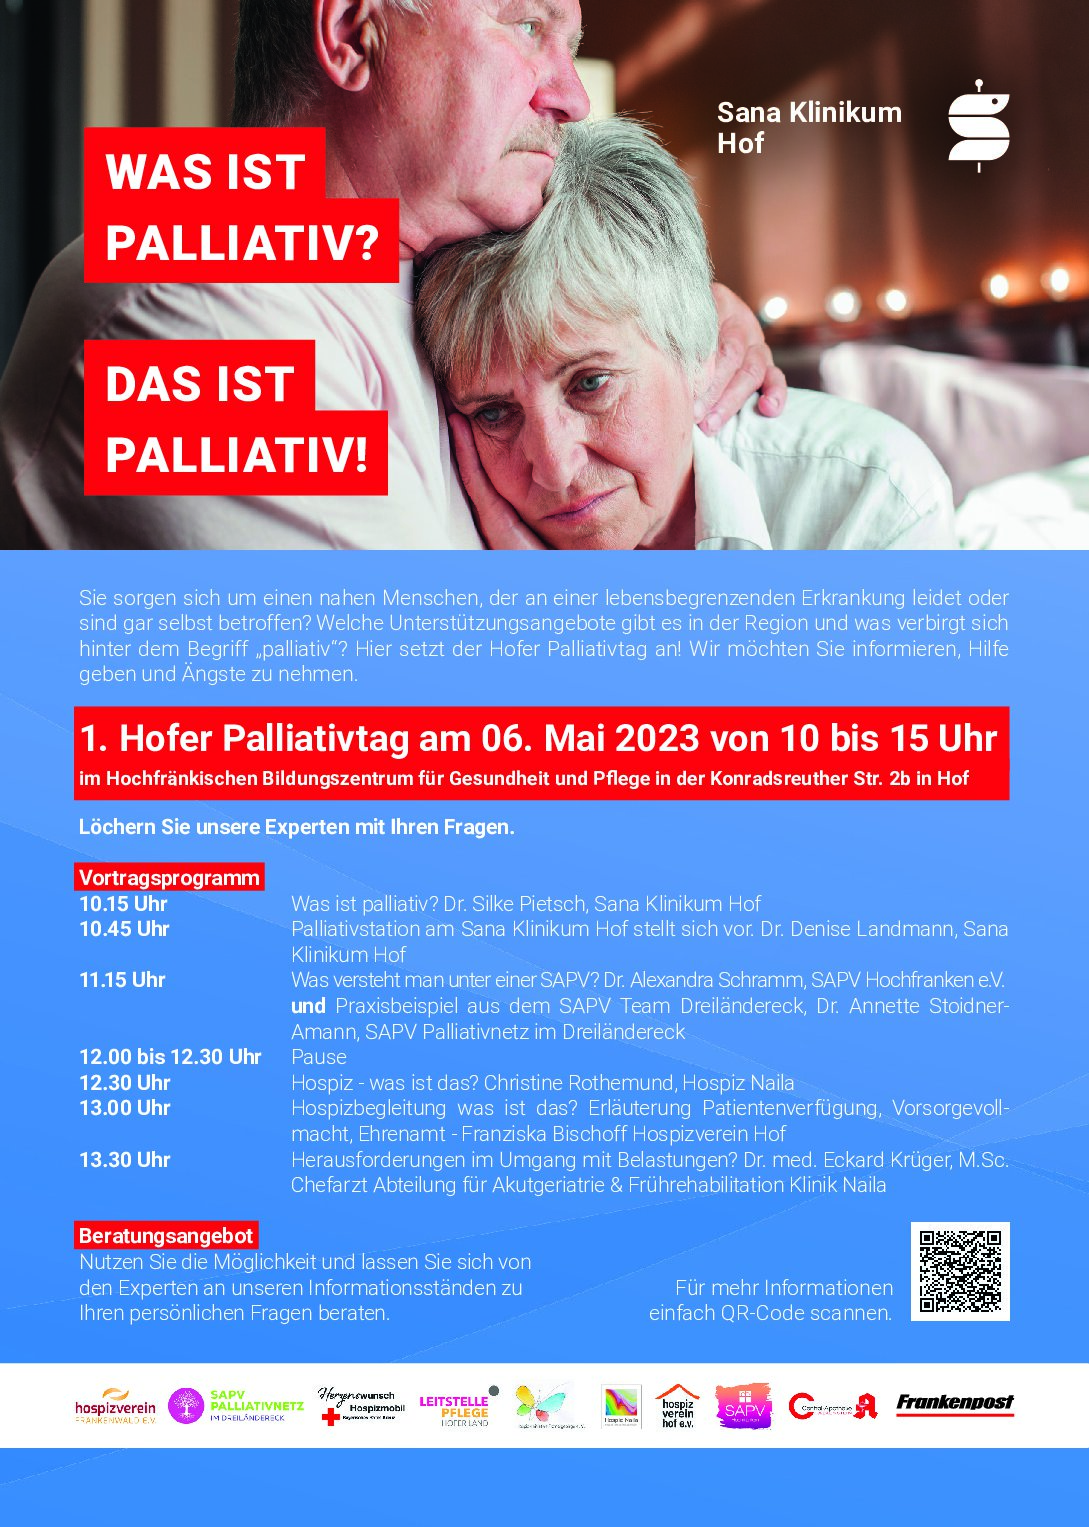 1. Hofer Palliativtag